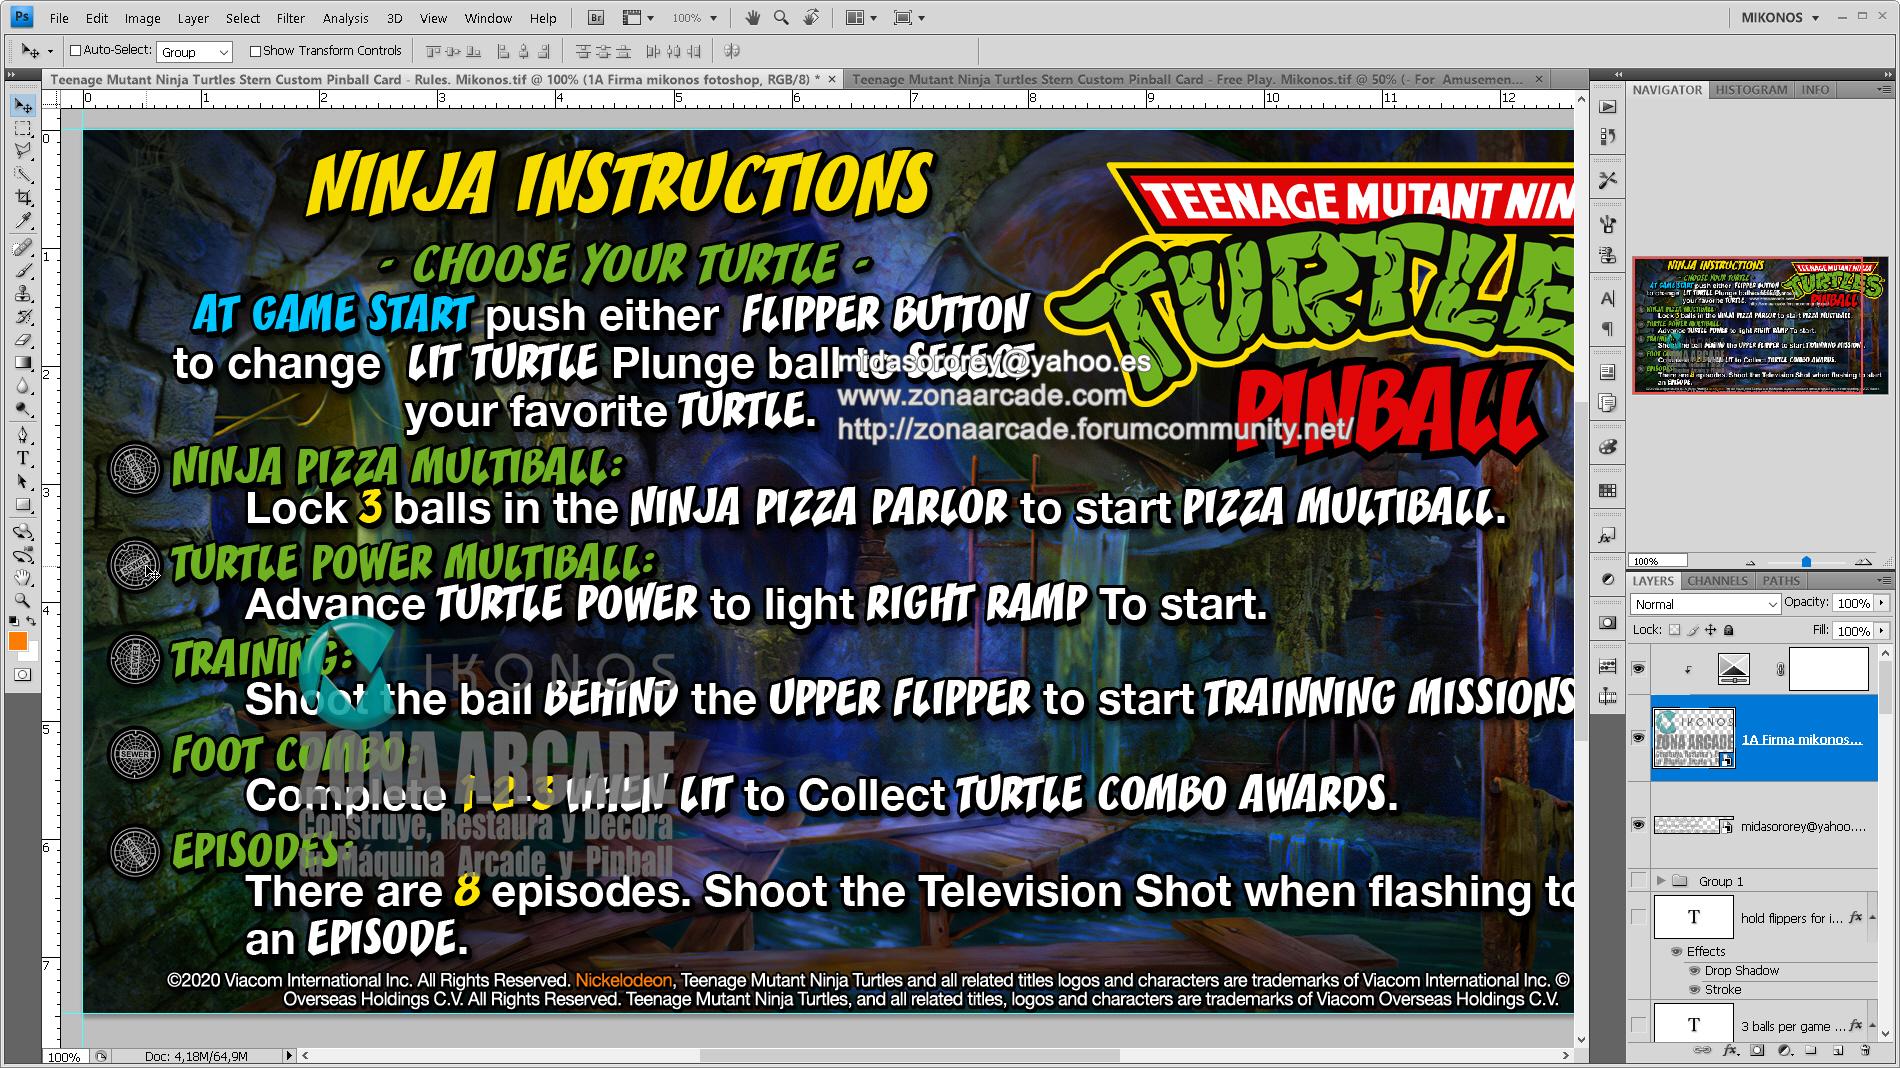 Teenage Mutant Ninja Turtles Custom Pinball Card - Rules. Mikonos2